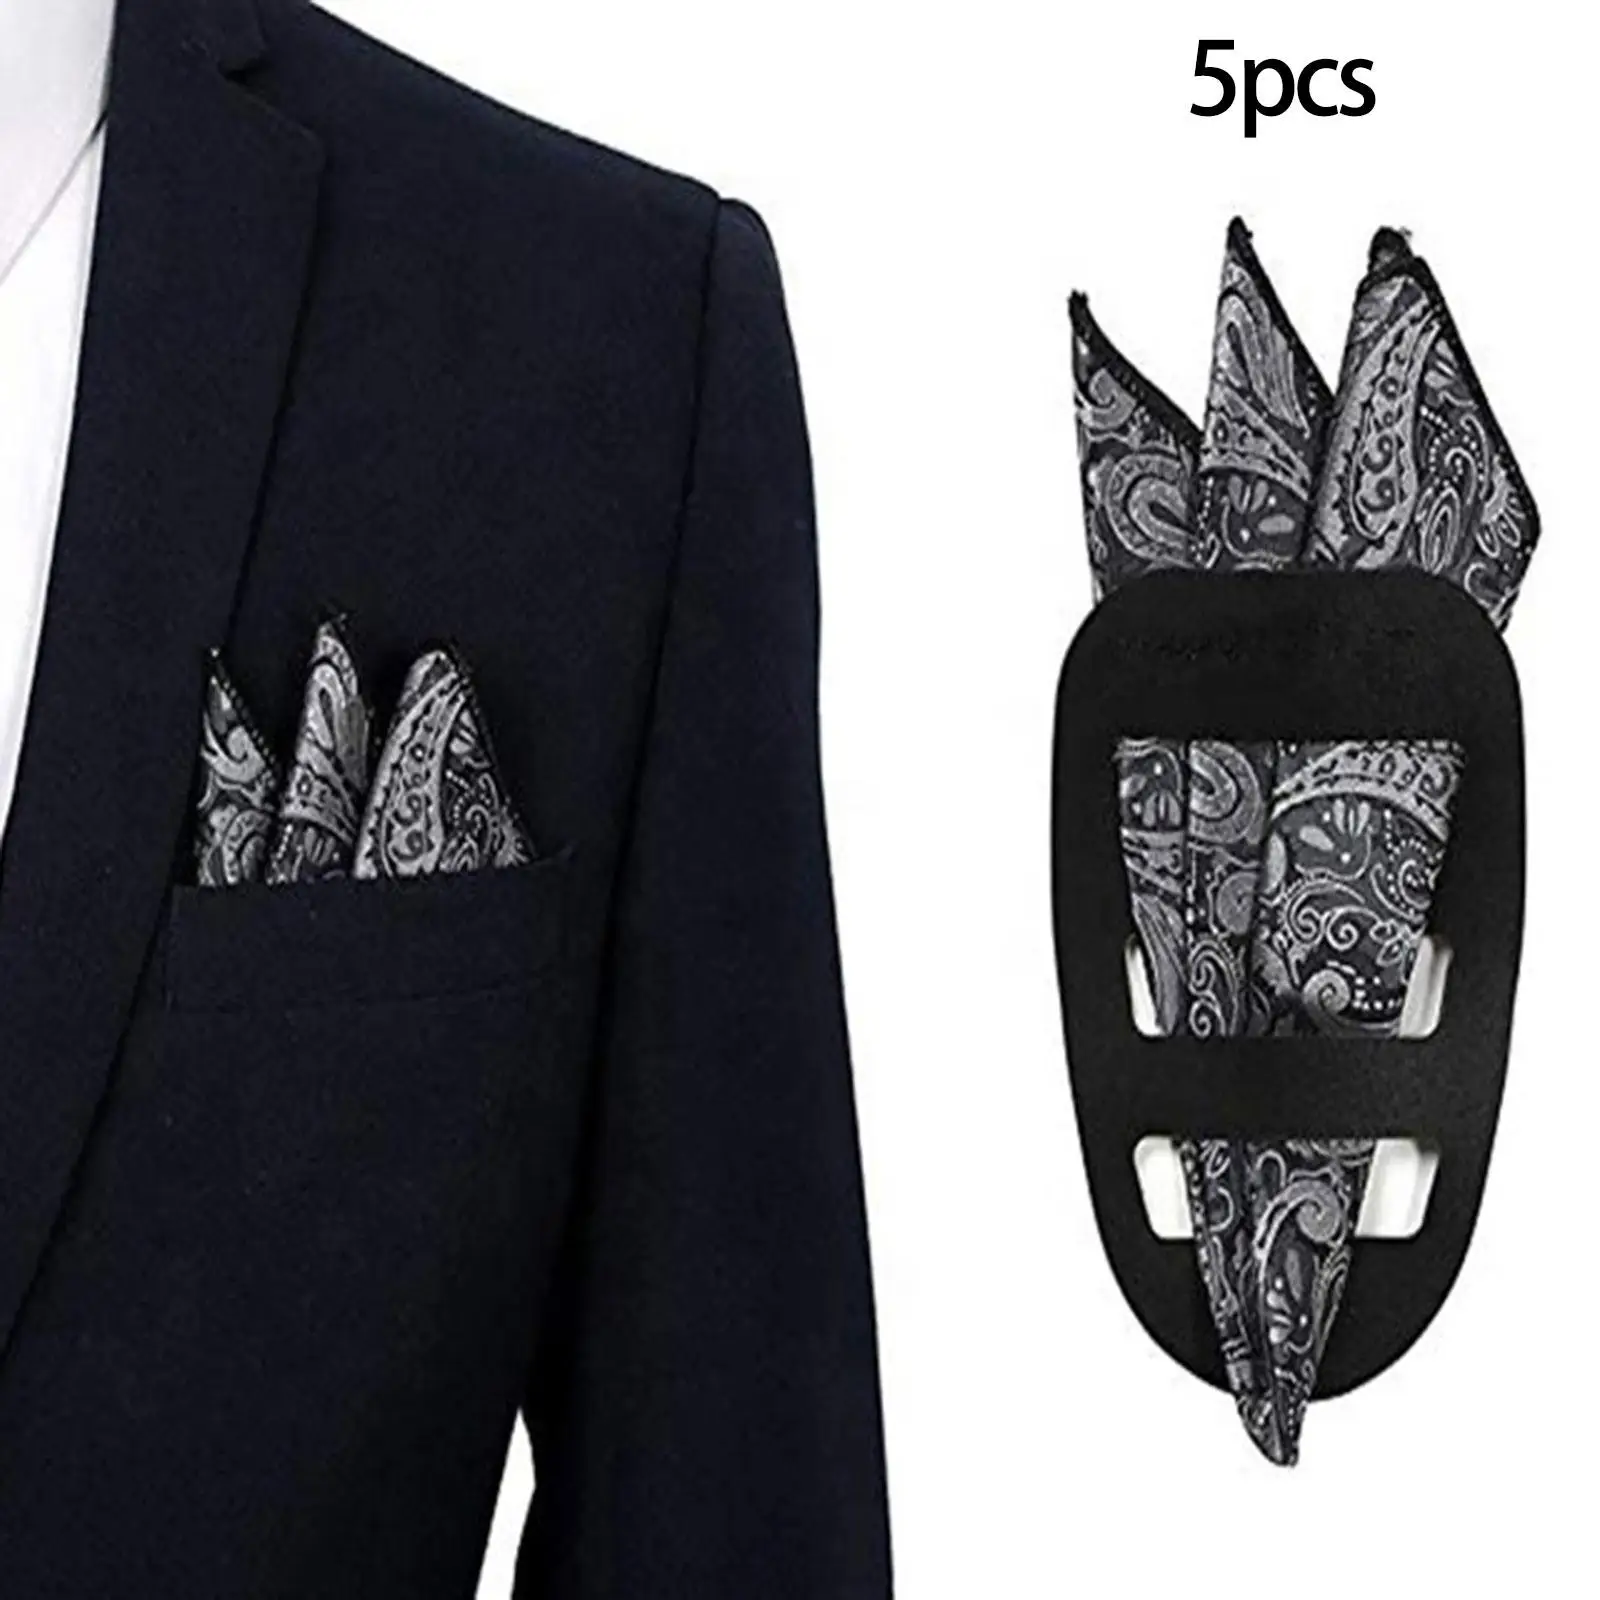 5 Pieces Pocket Square Holder, Square Scarf Holder, Pocket Towel Holder Support for MenS suits, Vests, Dinner Jackets